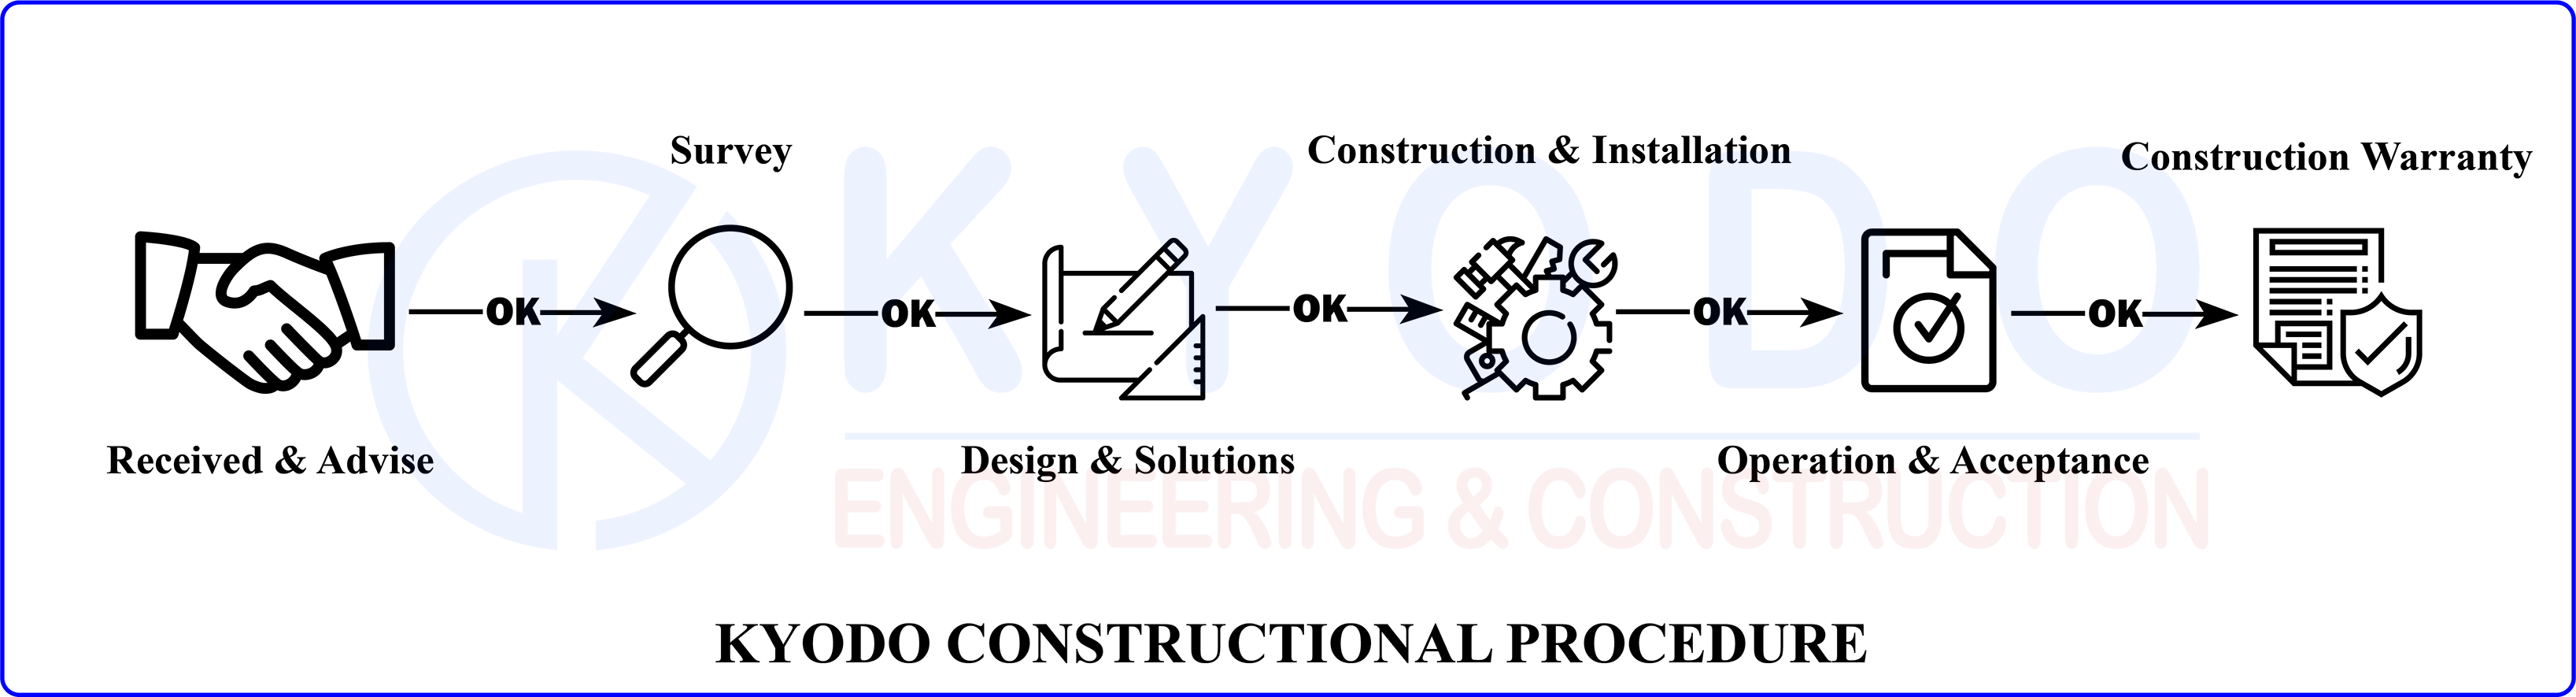 kyodo-constructional-procedure